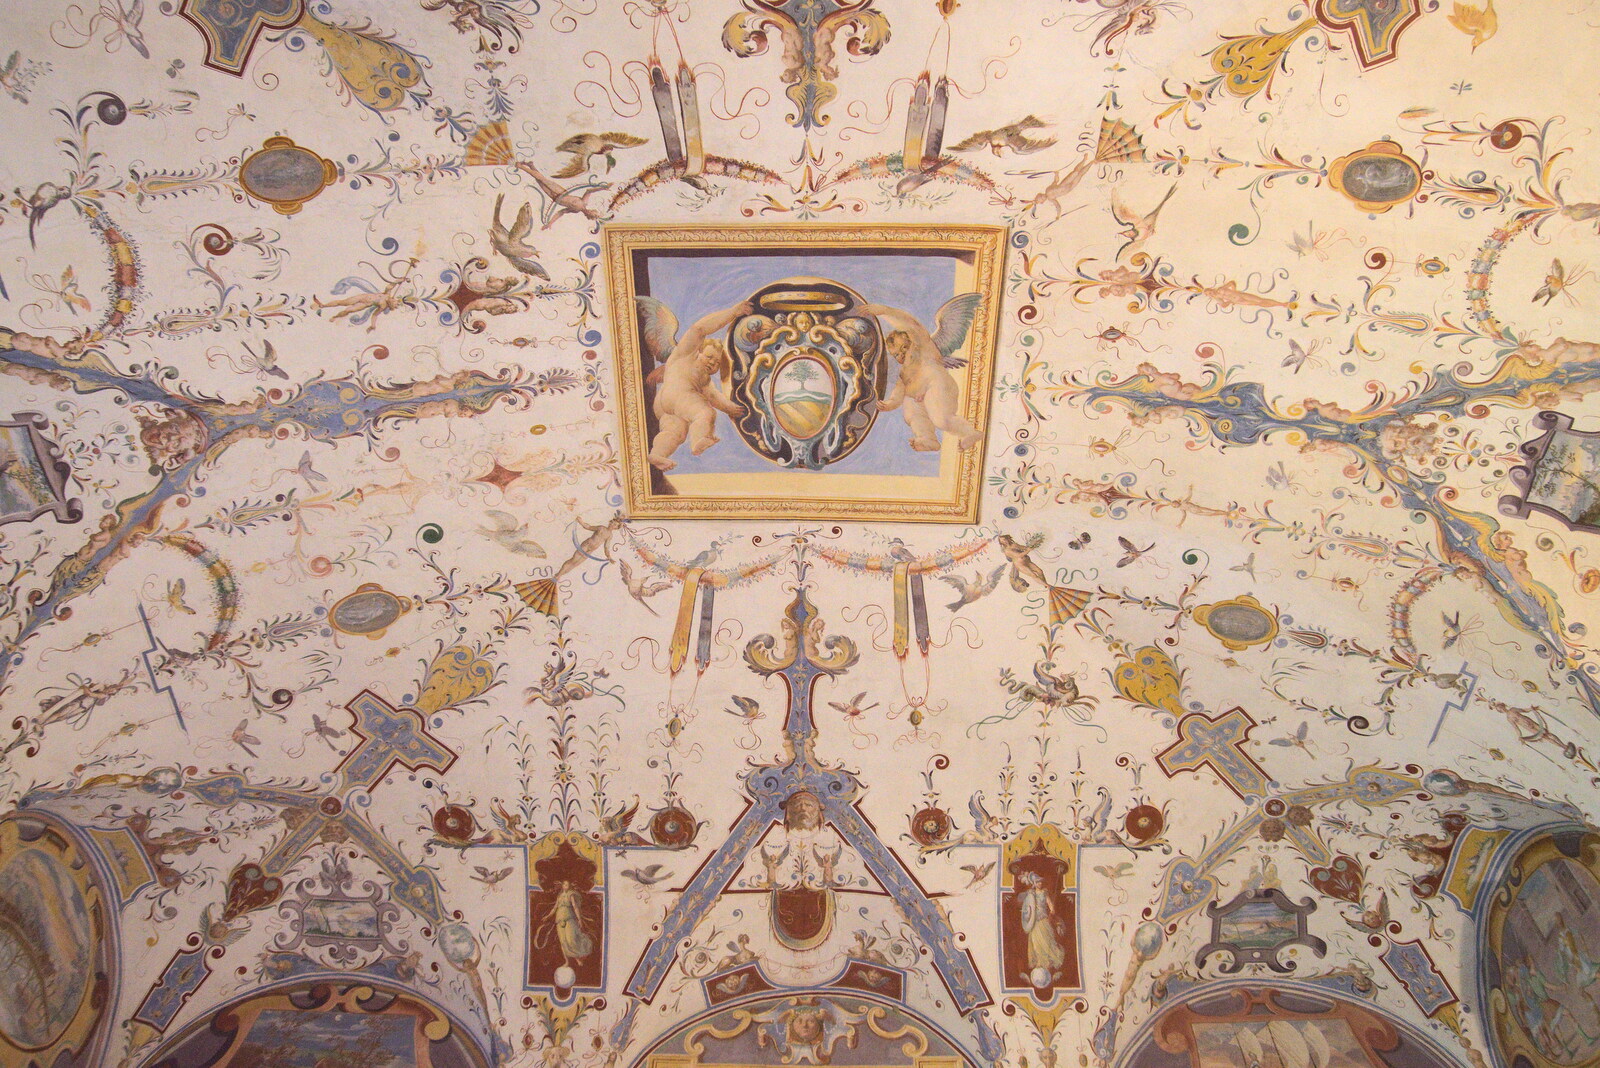 Castiglio Del Lago and Santuario della Verna, Umbria and Tuscany, Italy - 1st September 2022: More impressive ceiling art